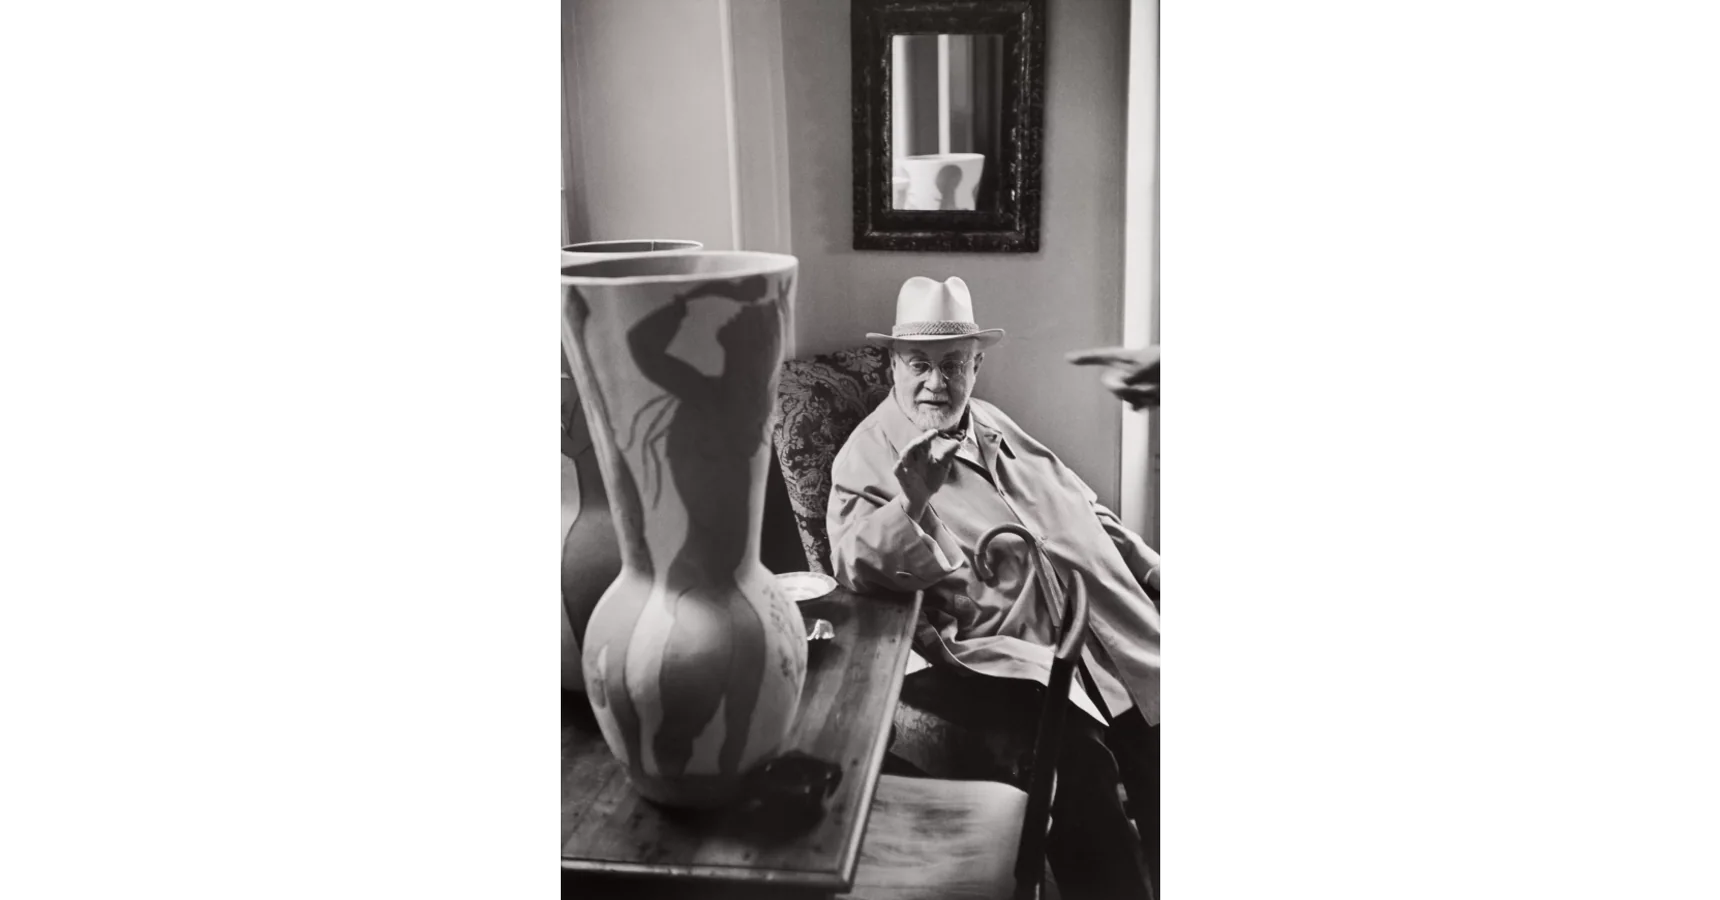 «Henri Matisse observing a ceramic vase by Pablo Picasso, Saint-Jean-Cap-Ferrat», vendida por 40.000 dólares.. 